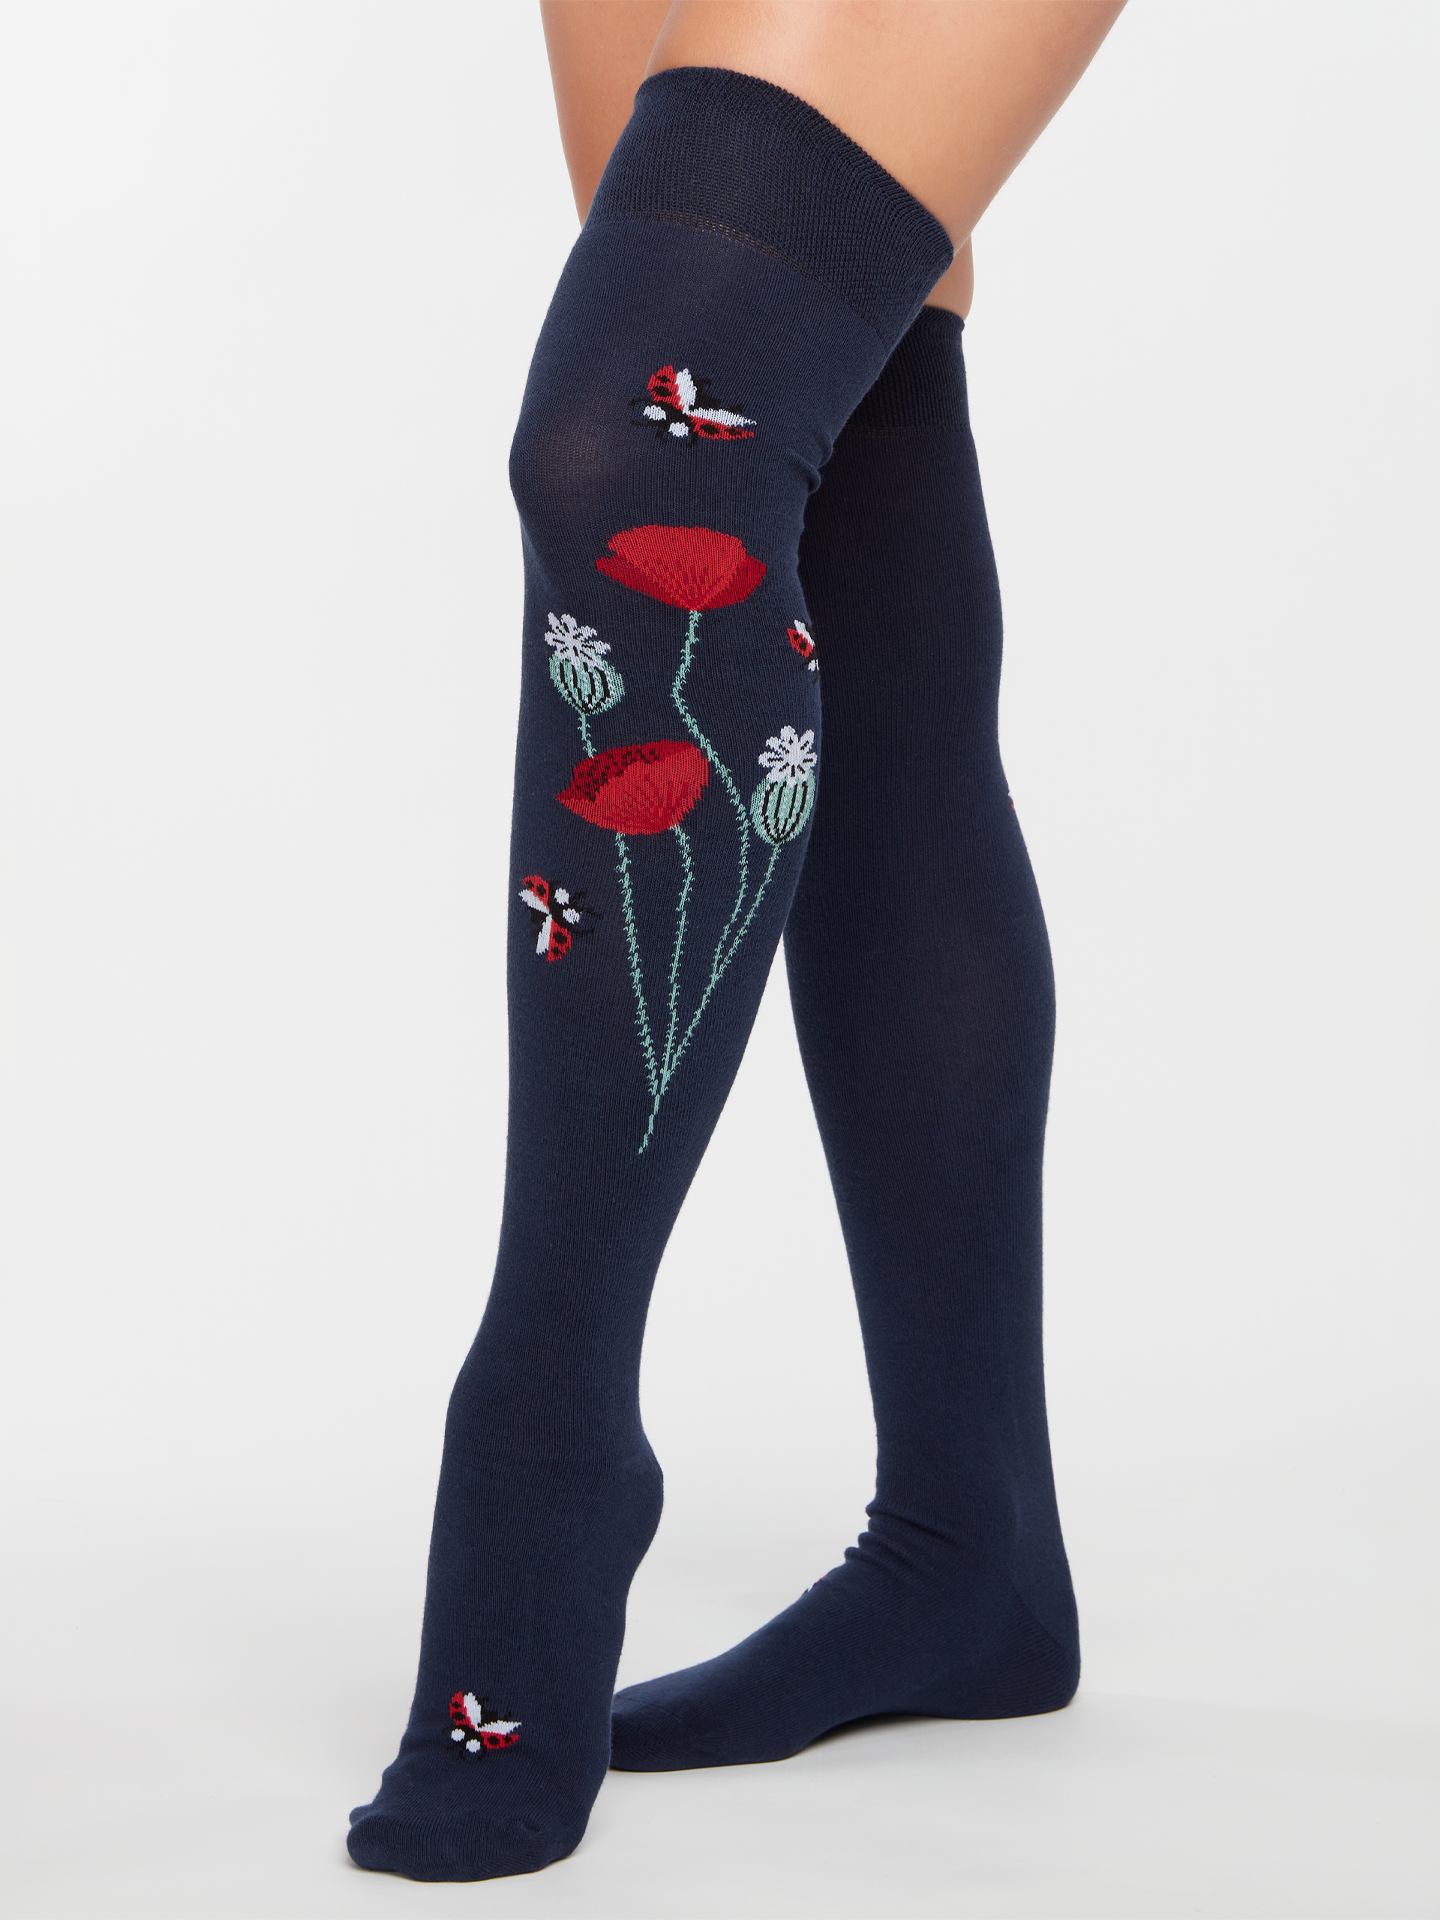 Over the Knee Socks Ladybugs & Poppy Flowers